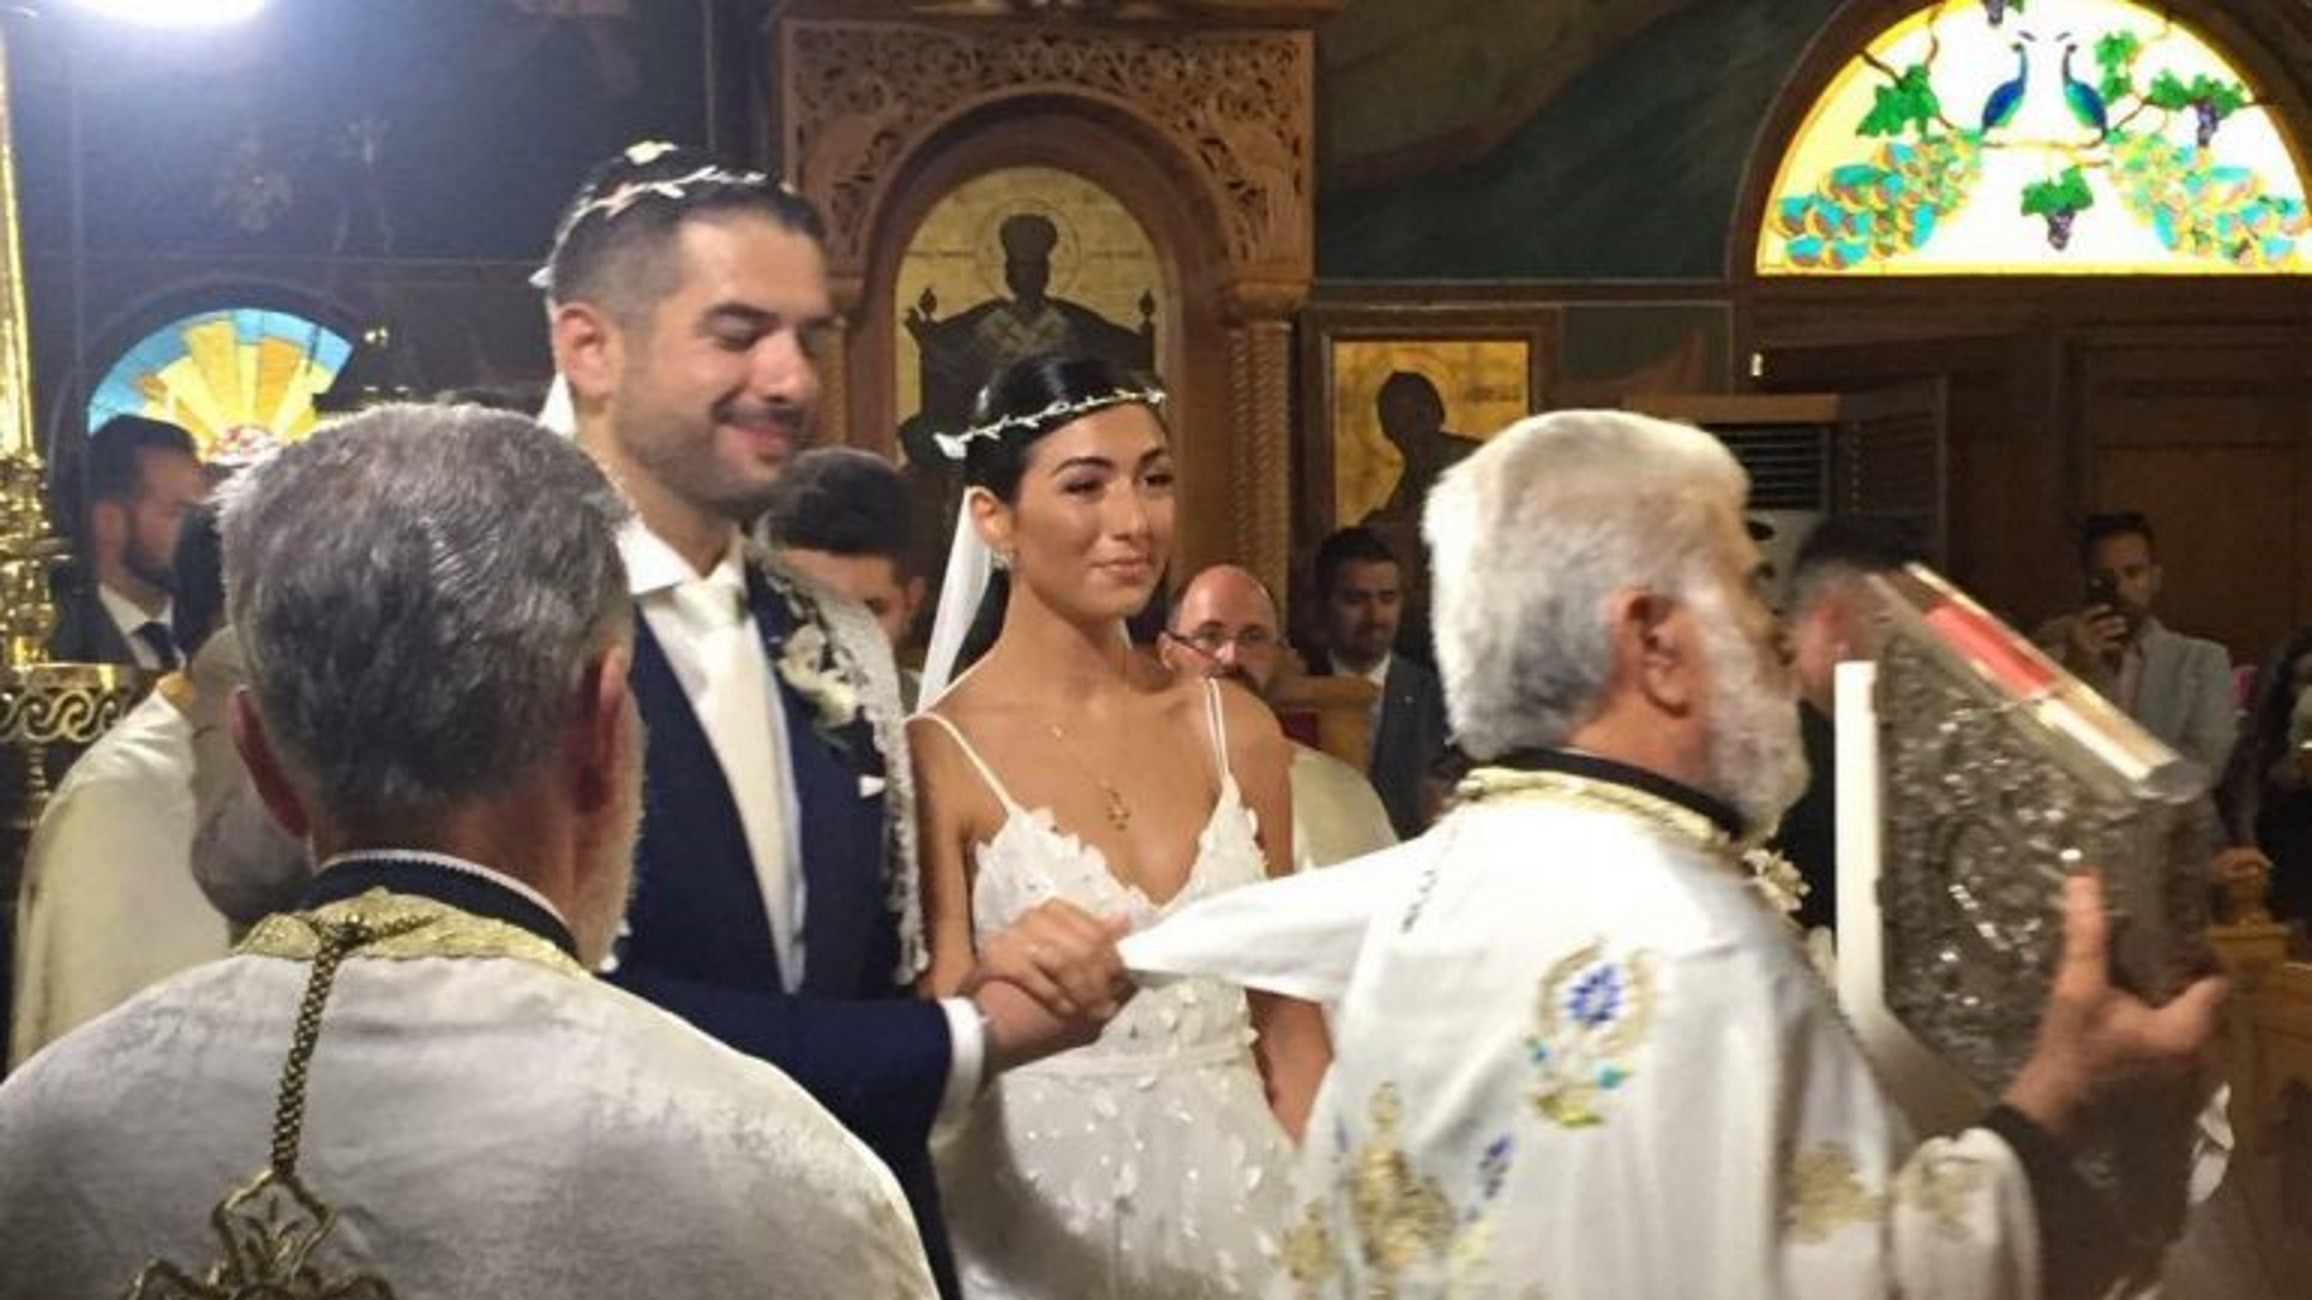 Κρήτη: Ο παραμυθένιος γάμος που συζητήθηκε – Η νύφη, ο γαμπρός και η ξεχωριστή τους ιστορία [pics]